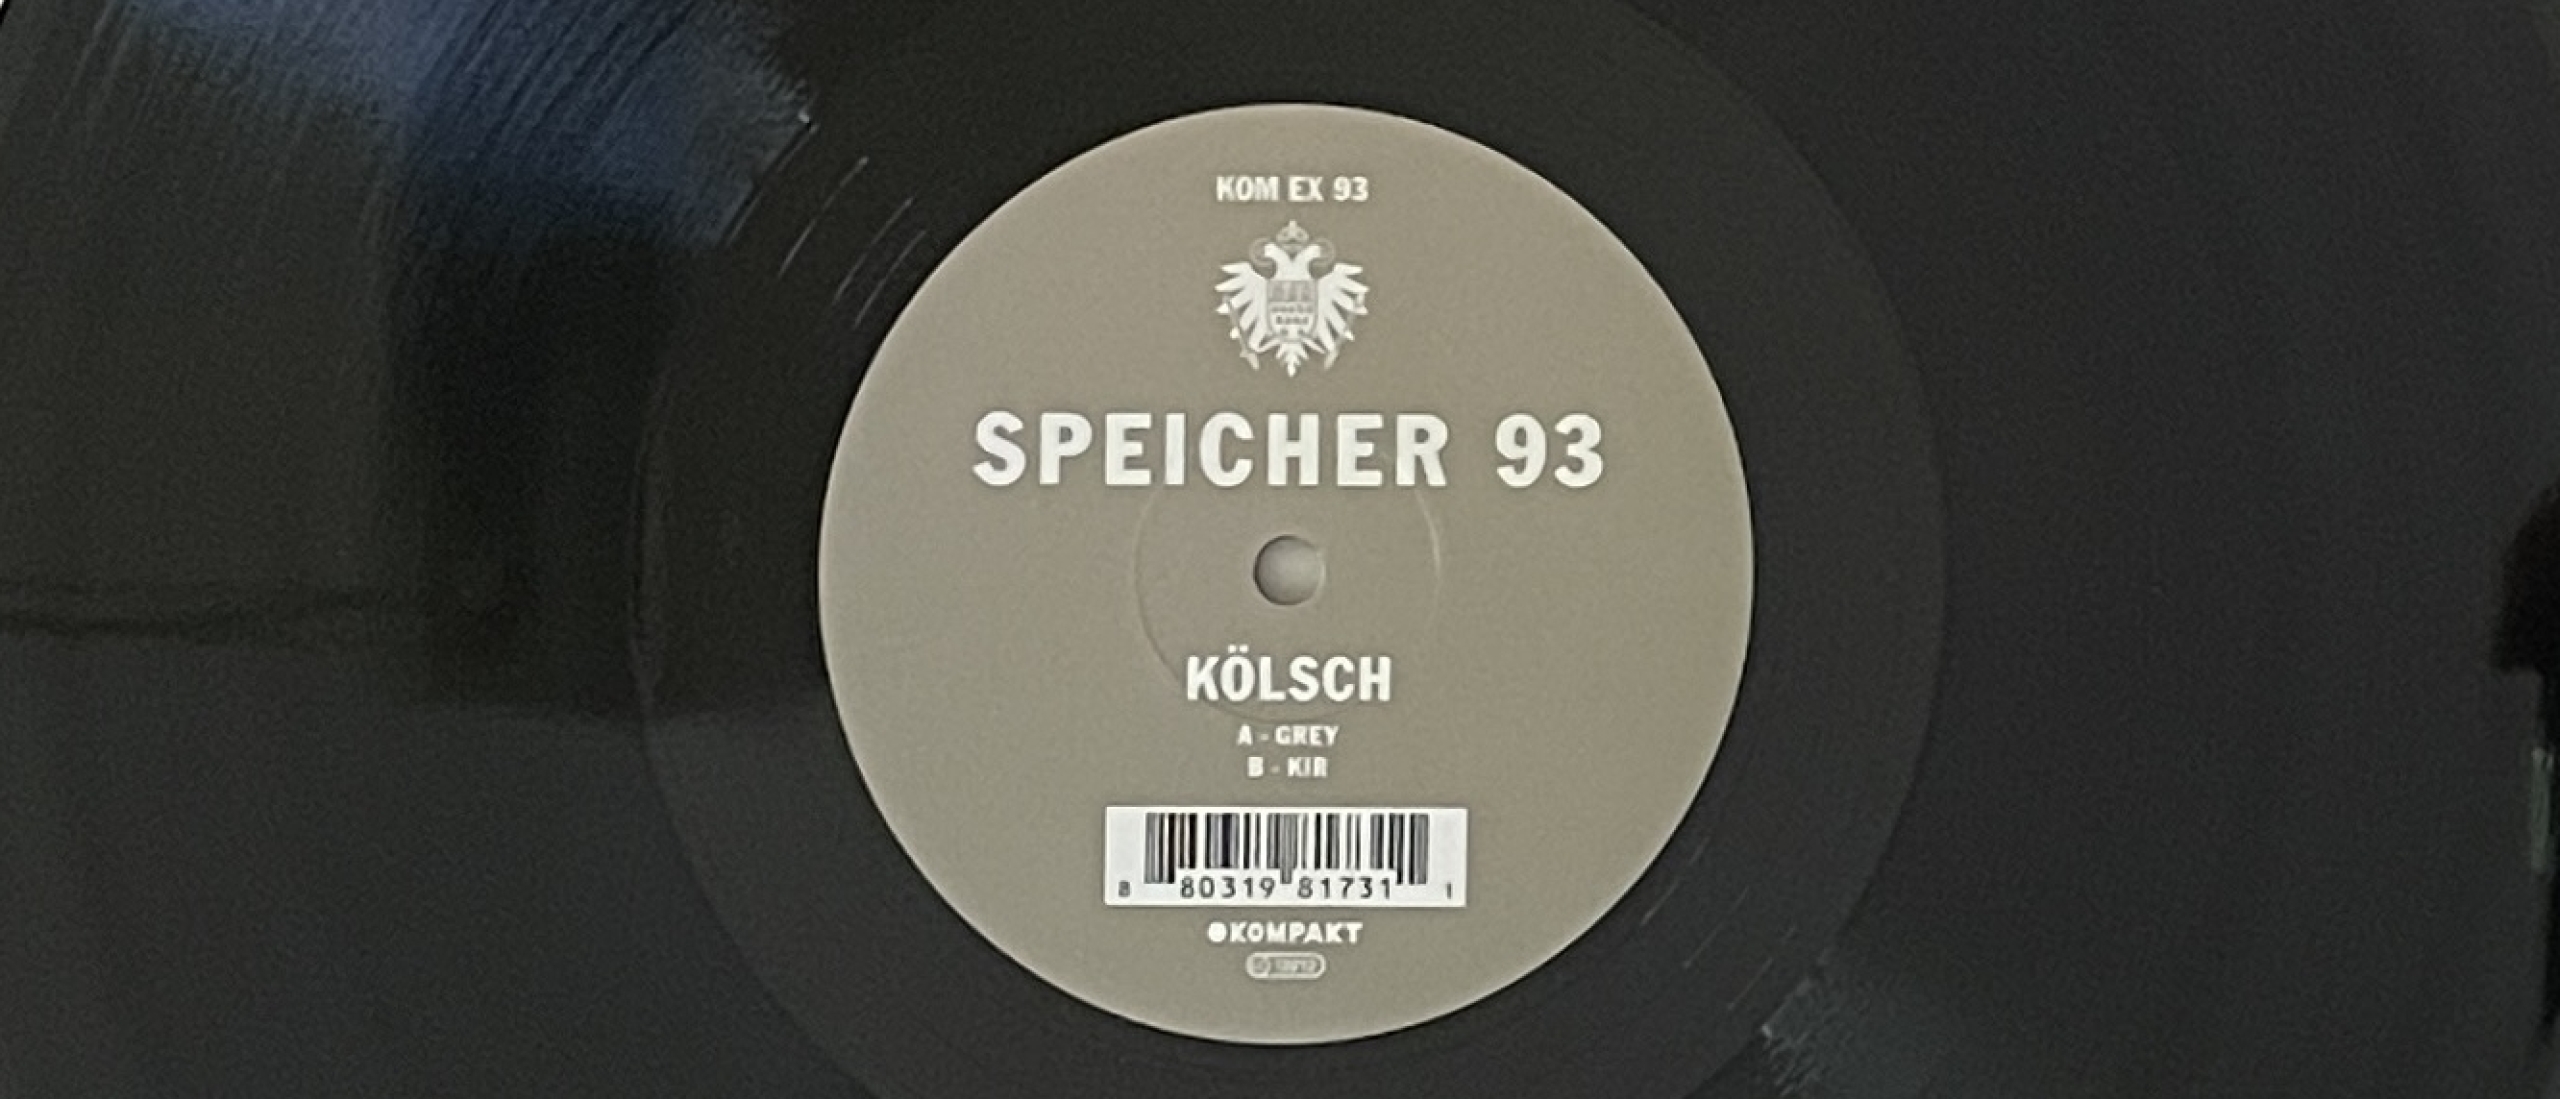 Forgotten Song Friday Kölsch Grey